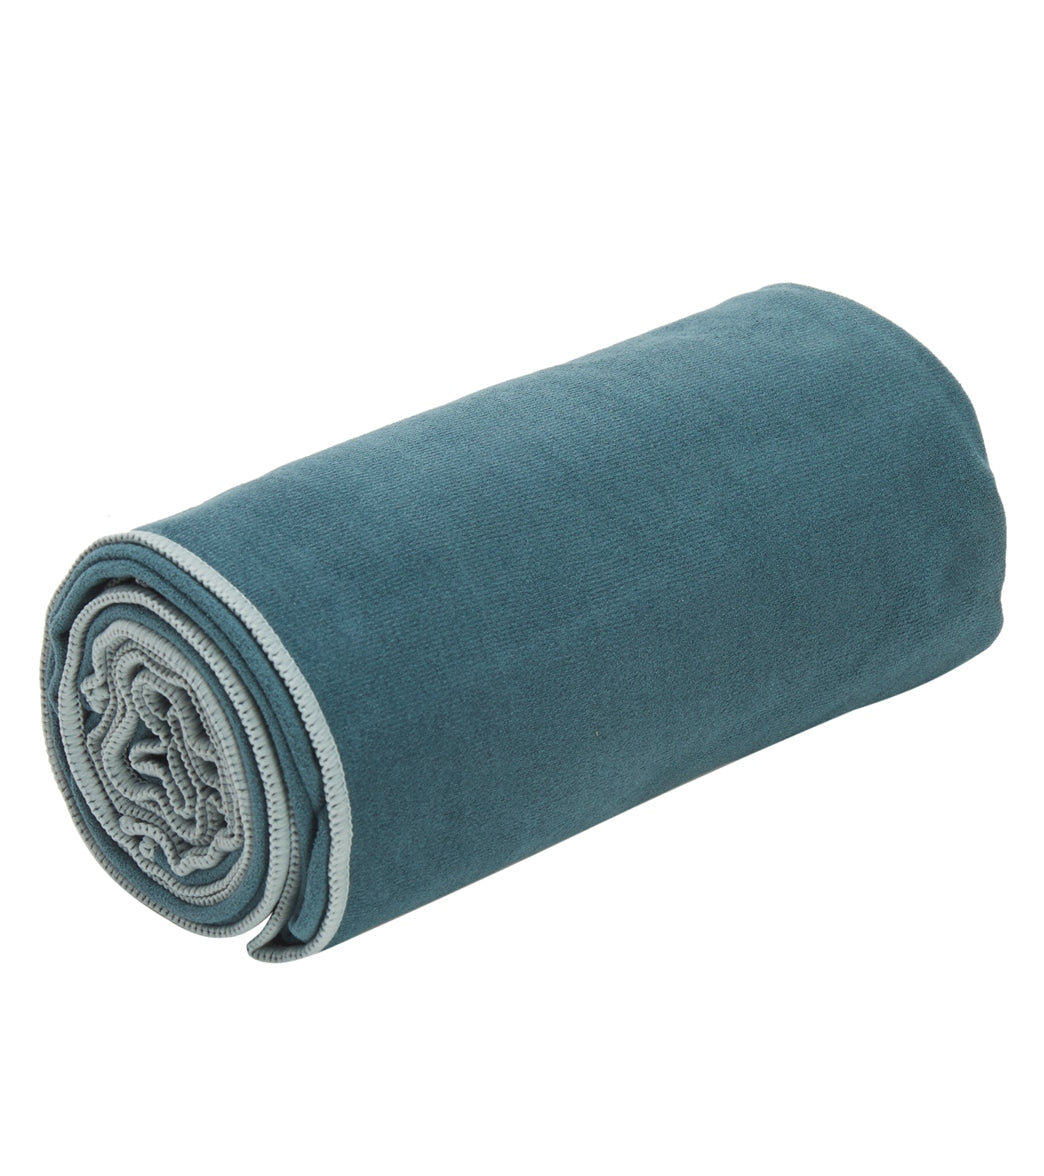 Super Absorbent Non-Slip Microfiber Hot Yoga Towel Mat - 24 x 72 in Blue